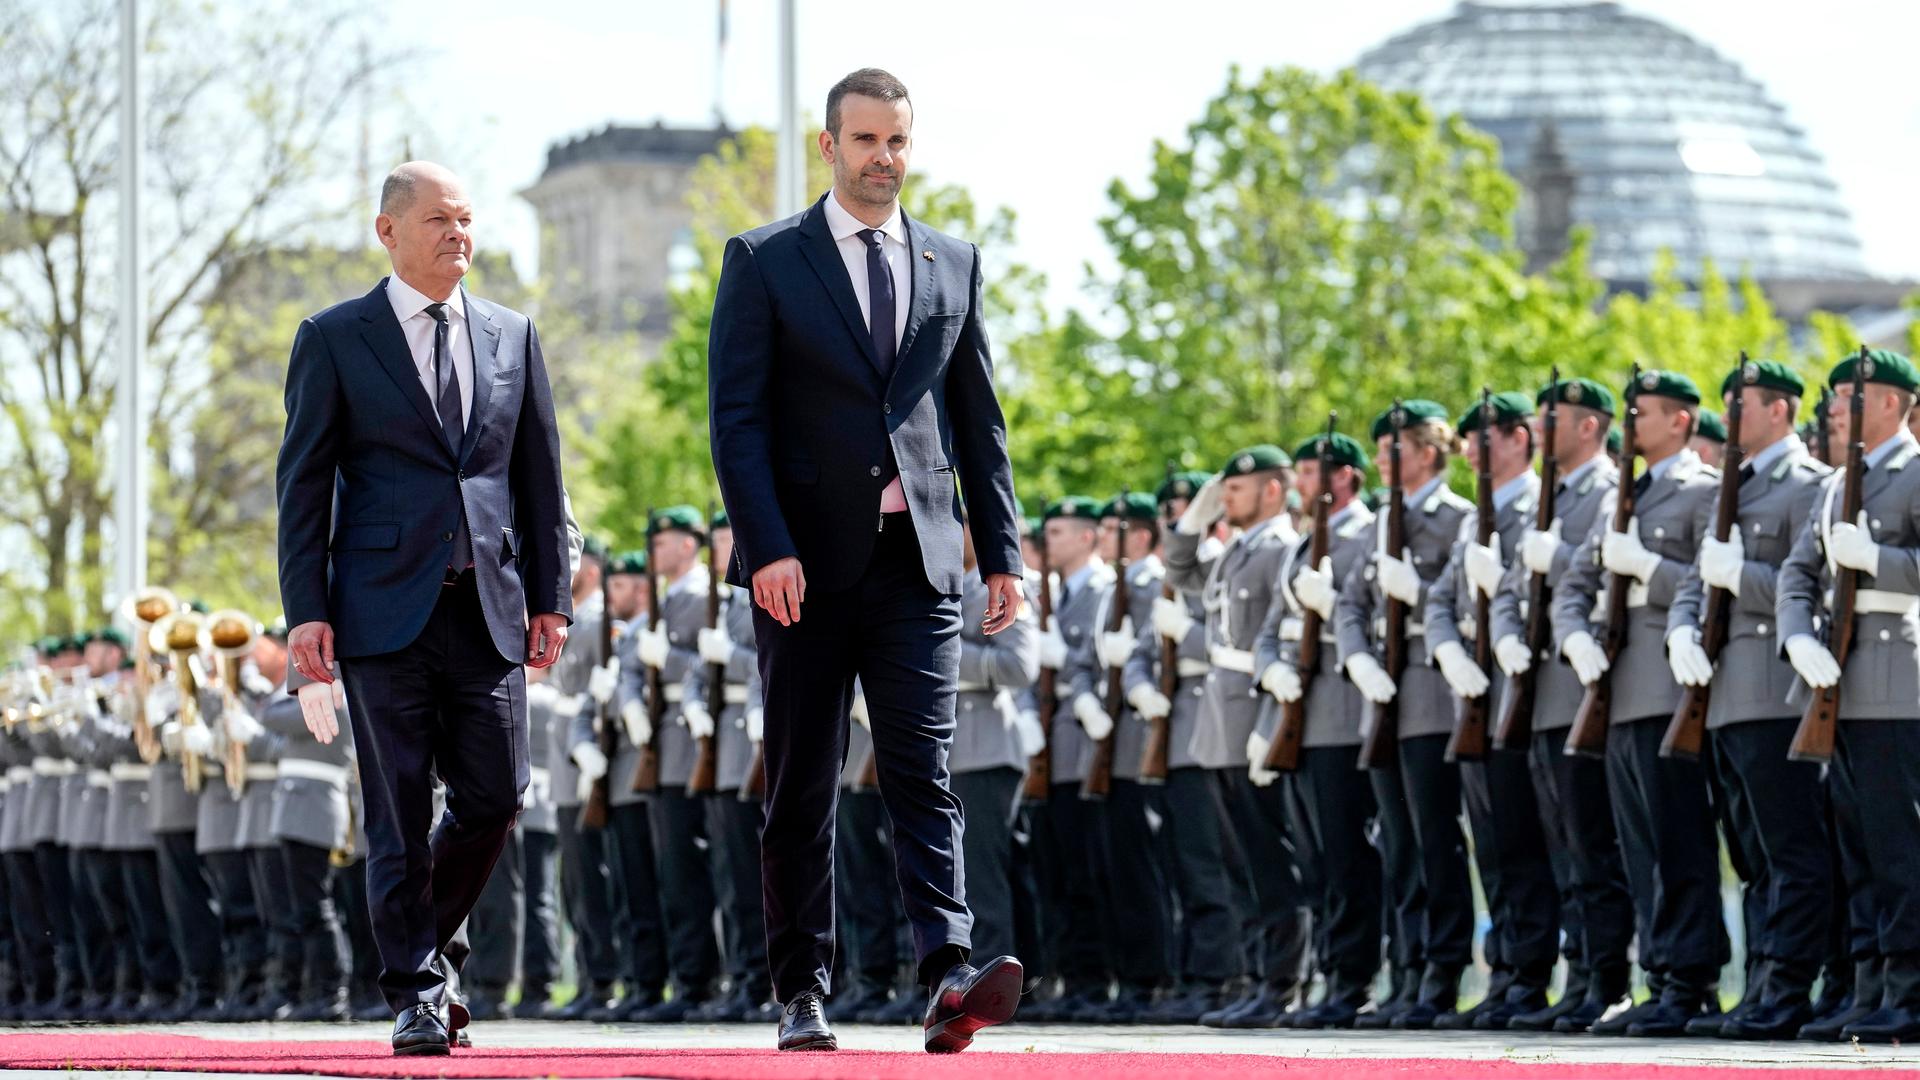 Bundeskanzler Olaf Scholz (links) und Montenegros Ministerpräsident Milojko Spajic schreiten vor Soldatinnen und Soldaten einen roten Teppich entlang. Dahinter die Kuppel des Reichstags. 